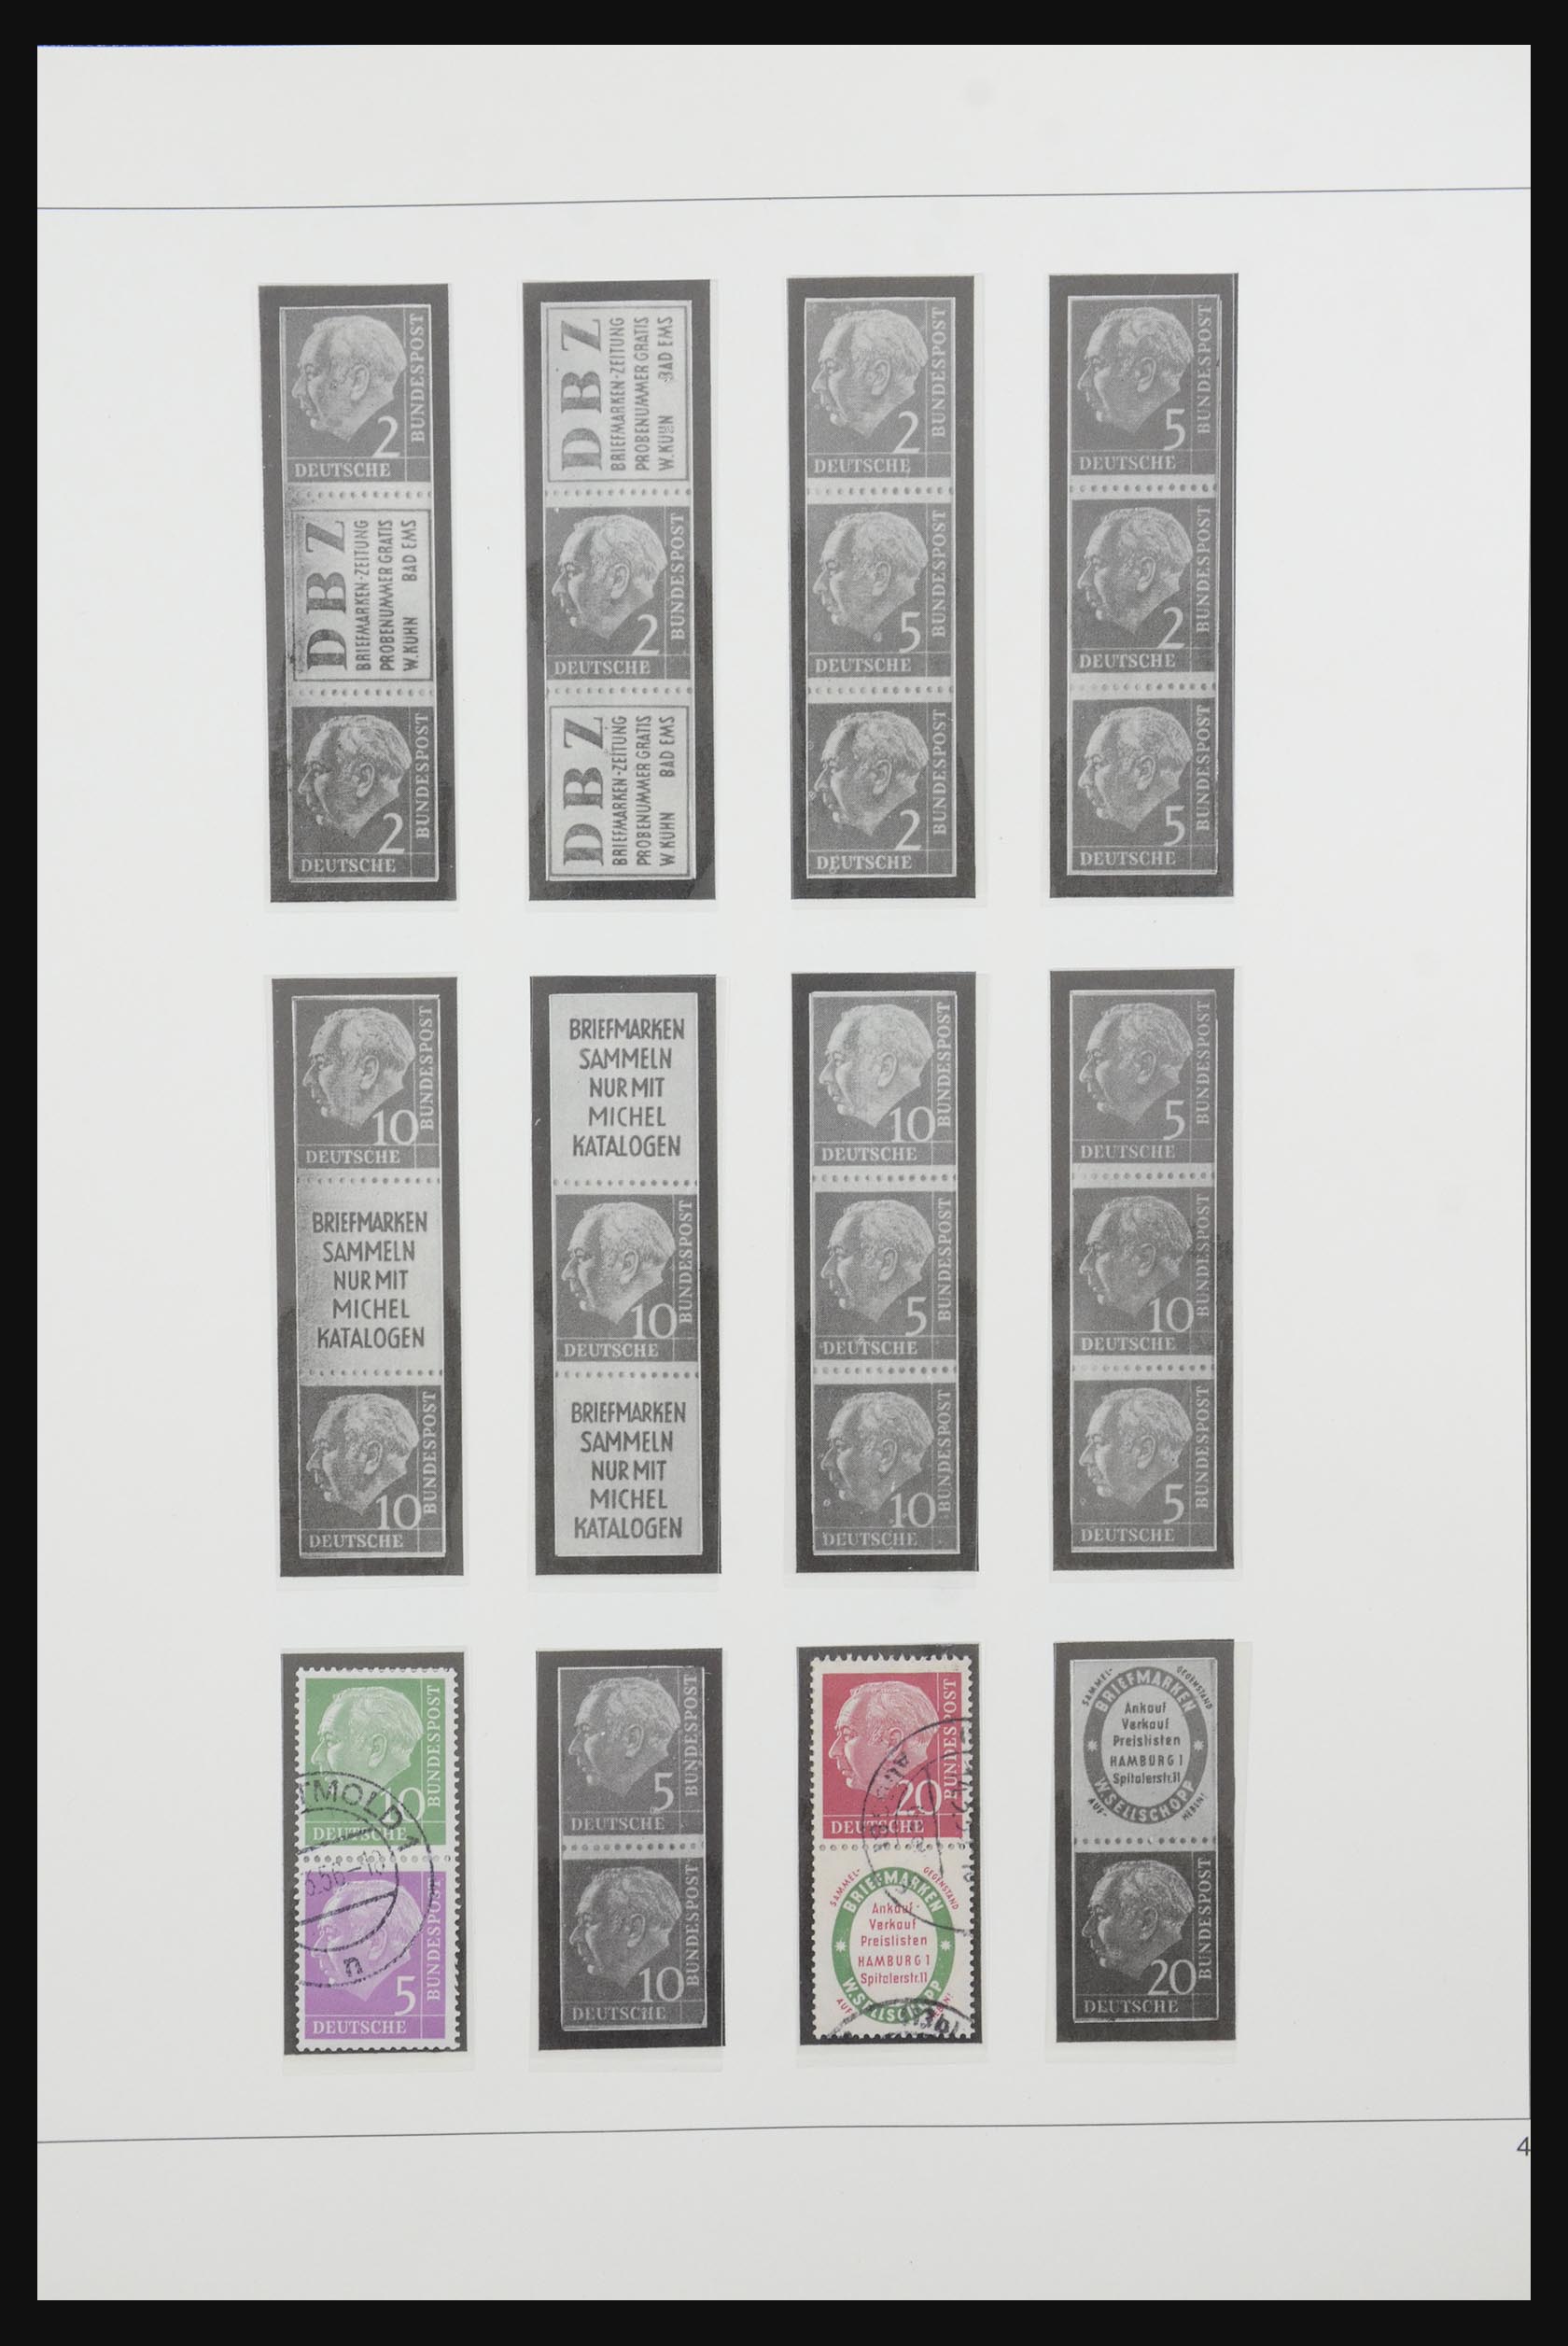 31842 004 - 31842 Bundespost combinations 1951-2003.